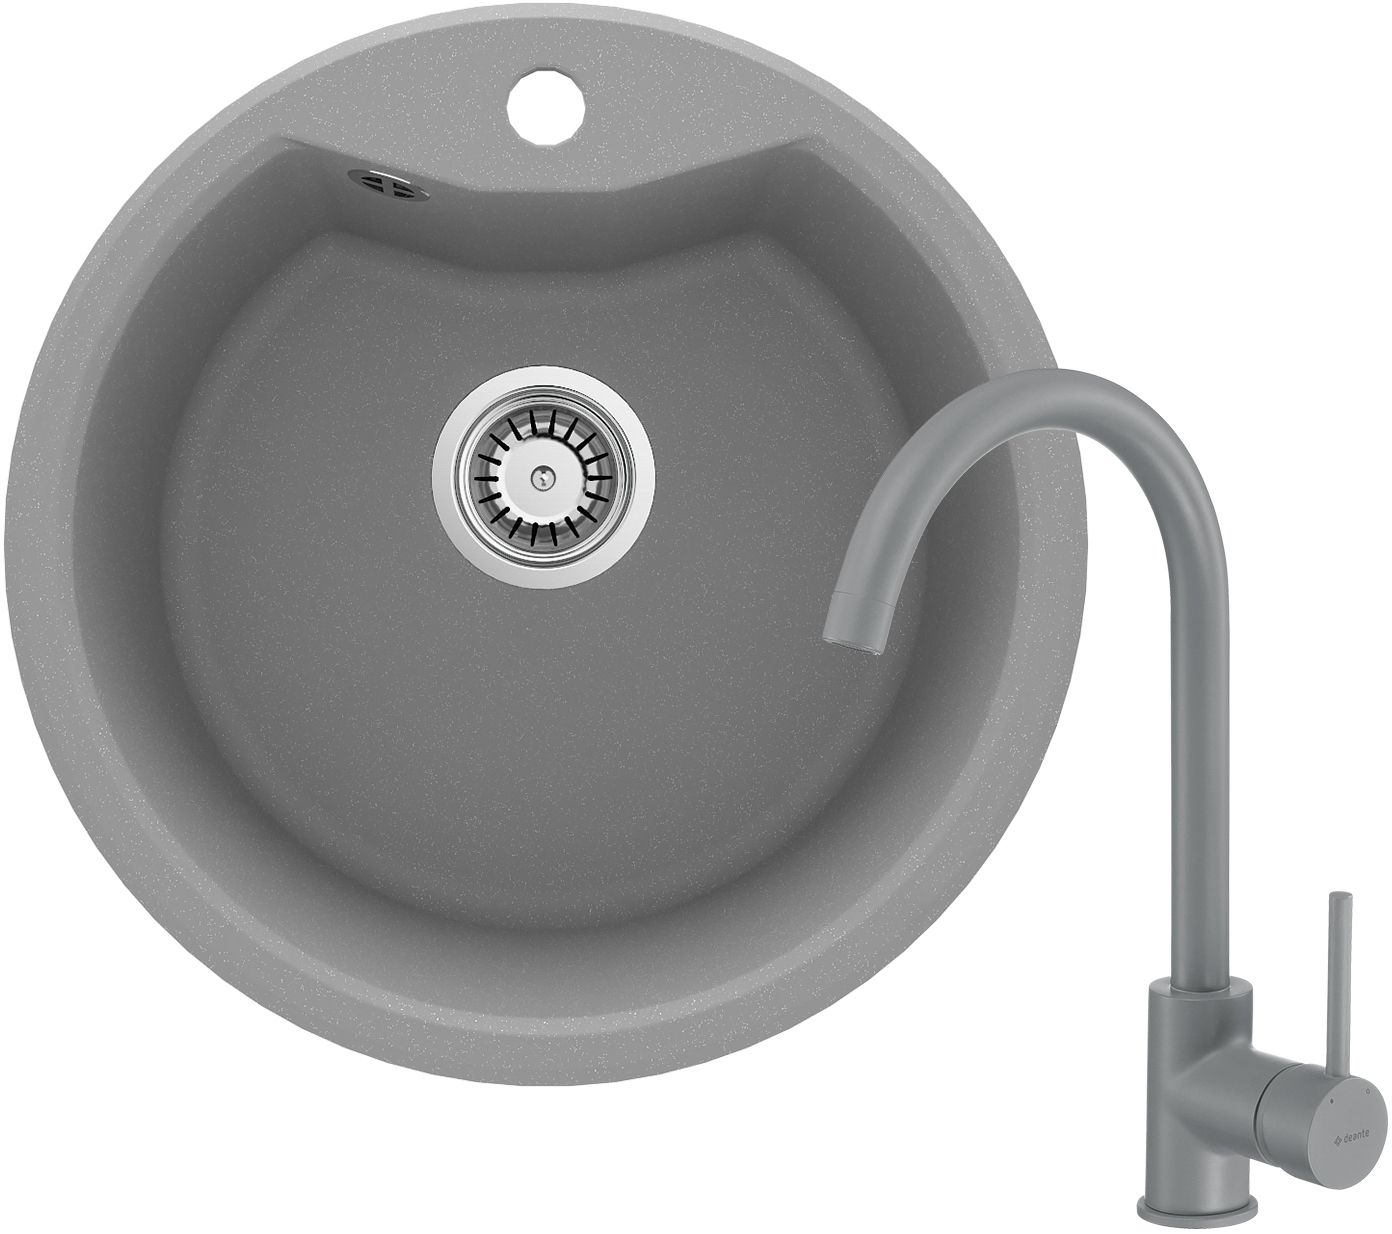 Granite sink with tap, 1-bowl - ZRSBS803 - Główne zdjęcie produktowe